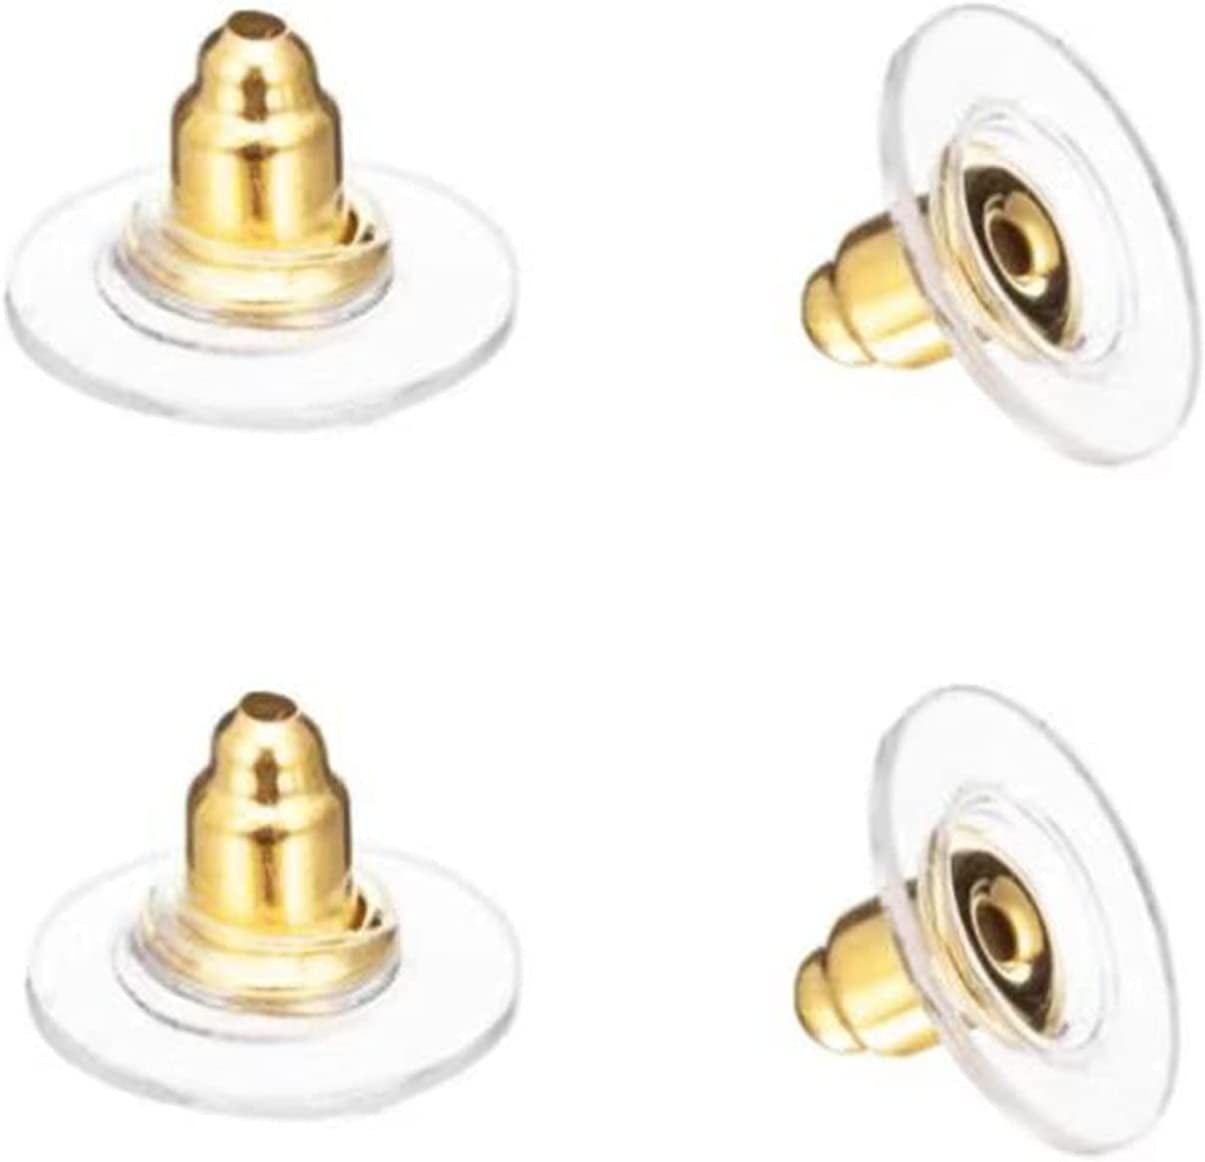 Earring Backs,4PCS Dics Earring Backs for Studs, Droopy Ears, Heavy Earrings, Secure Pierced Earring Backs Replacements in White Gold, Large Heavy